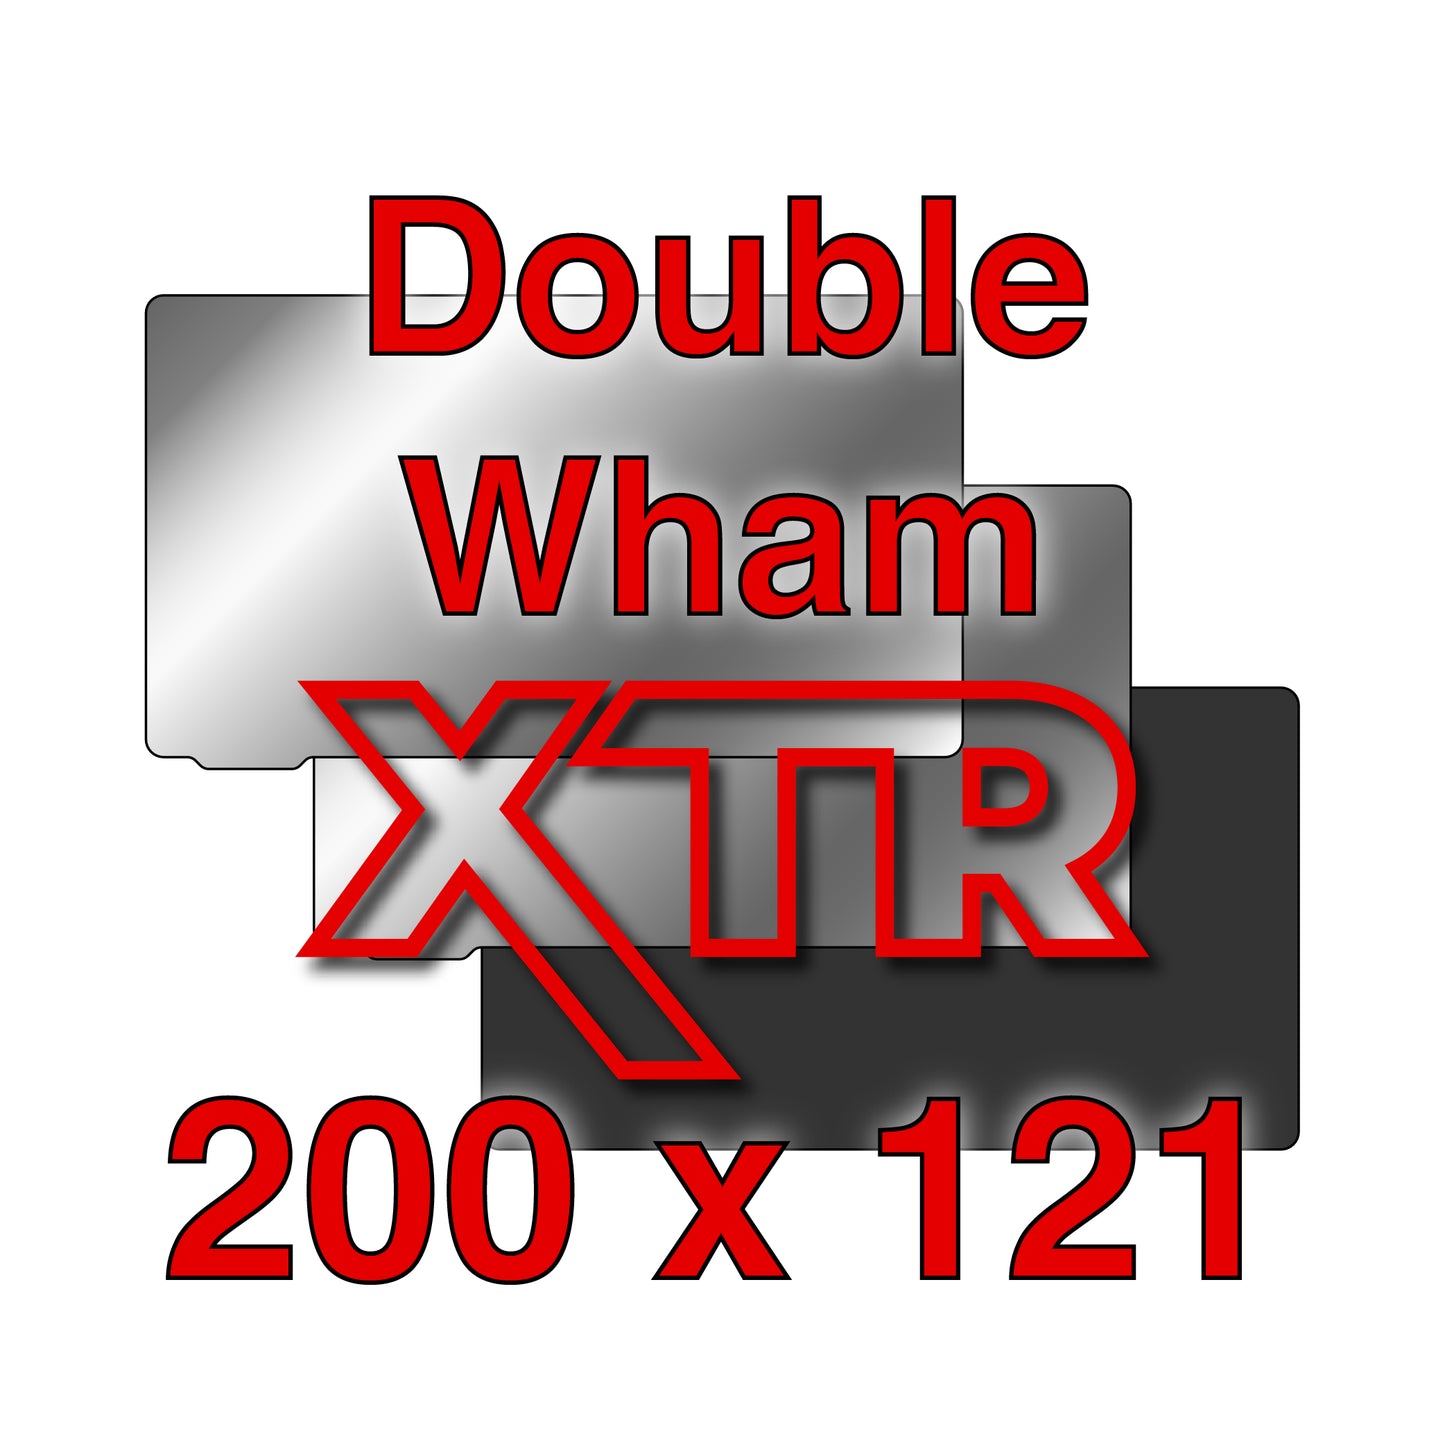 XTR Kit - NEXA3D XIP - 200 x 121